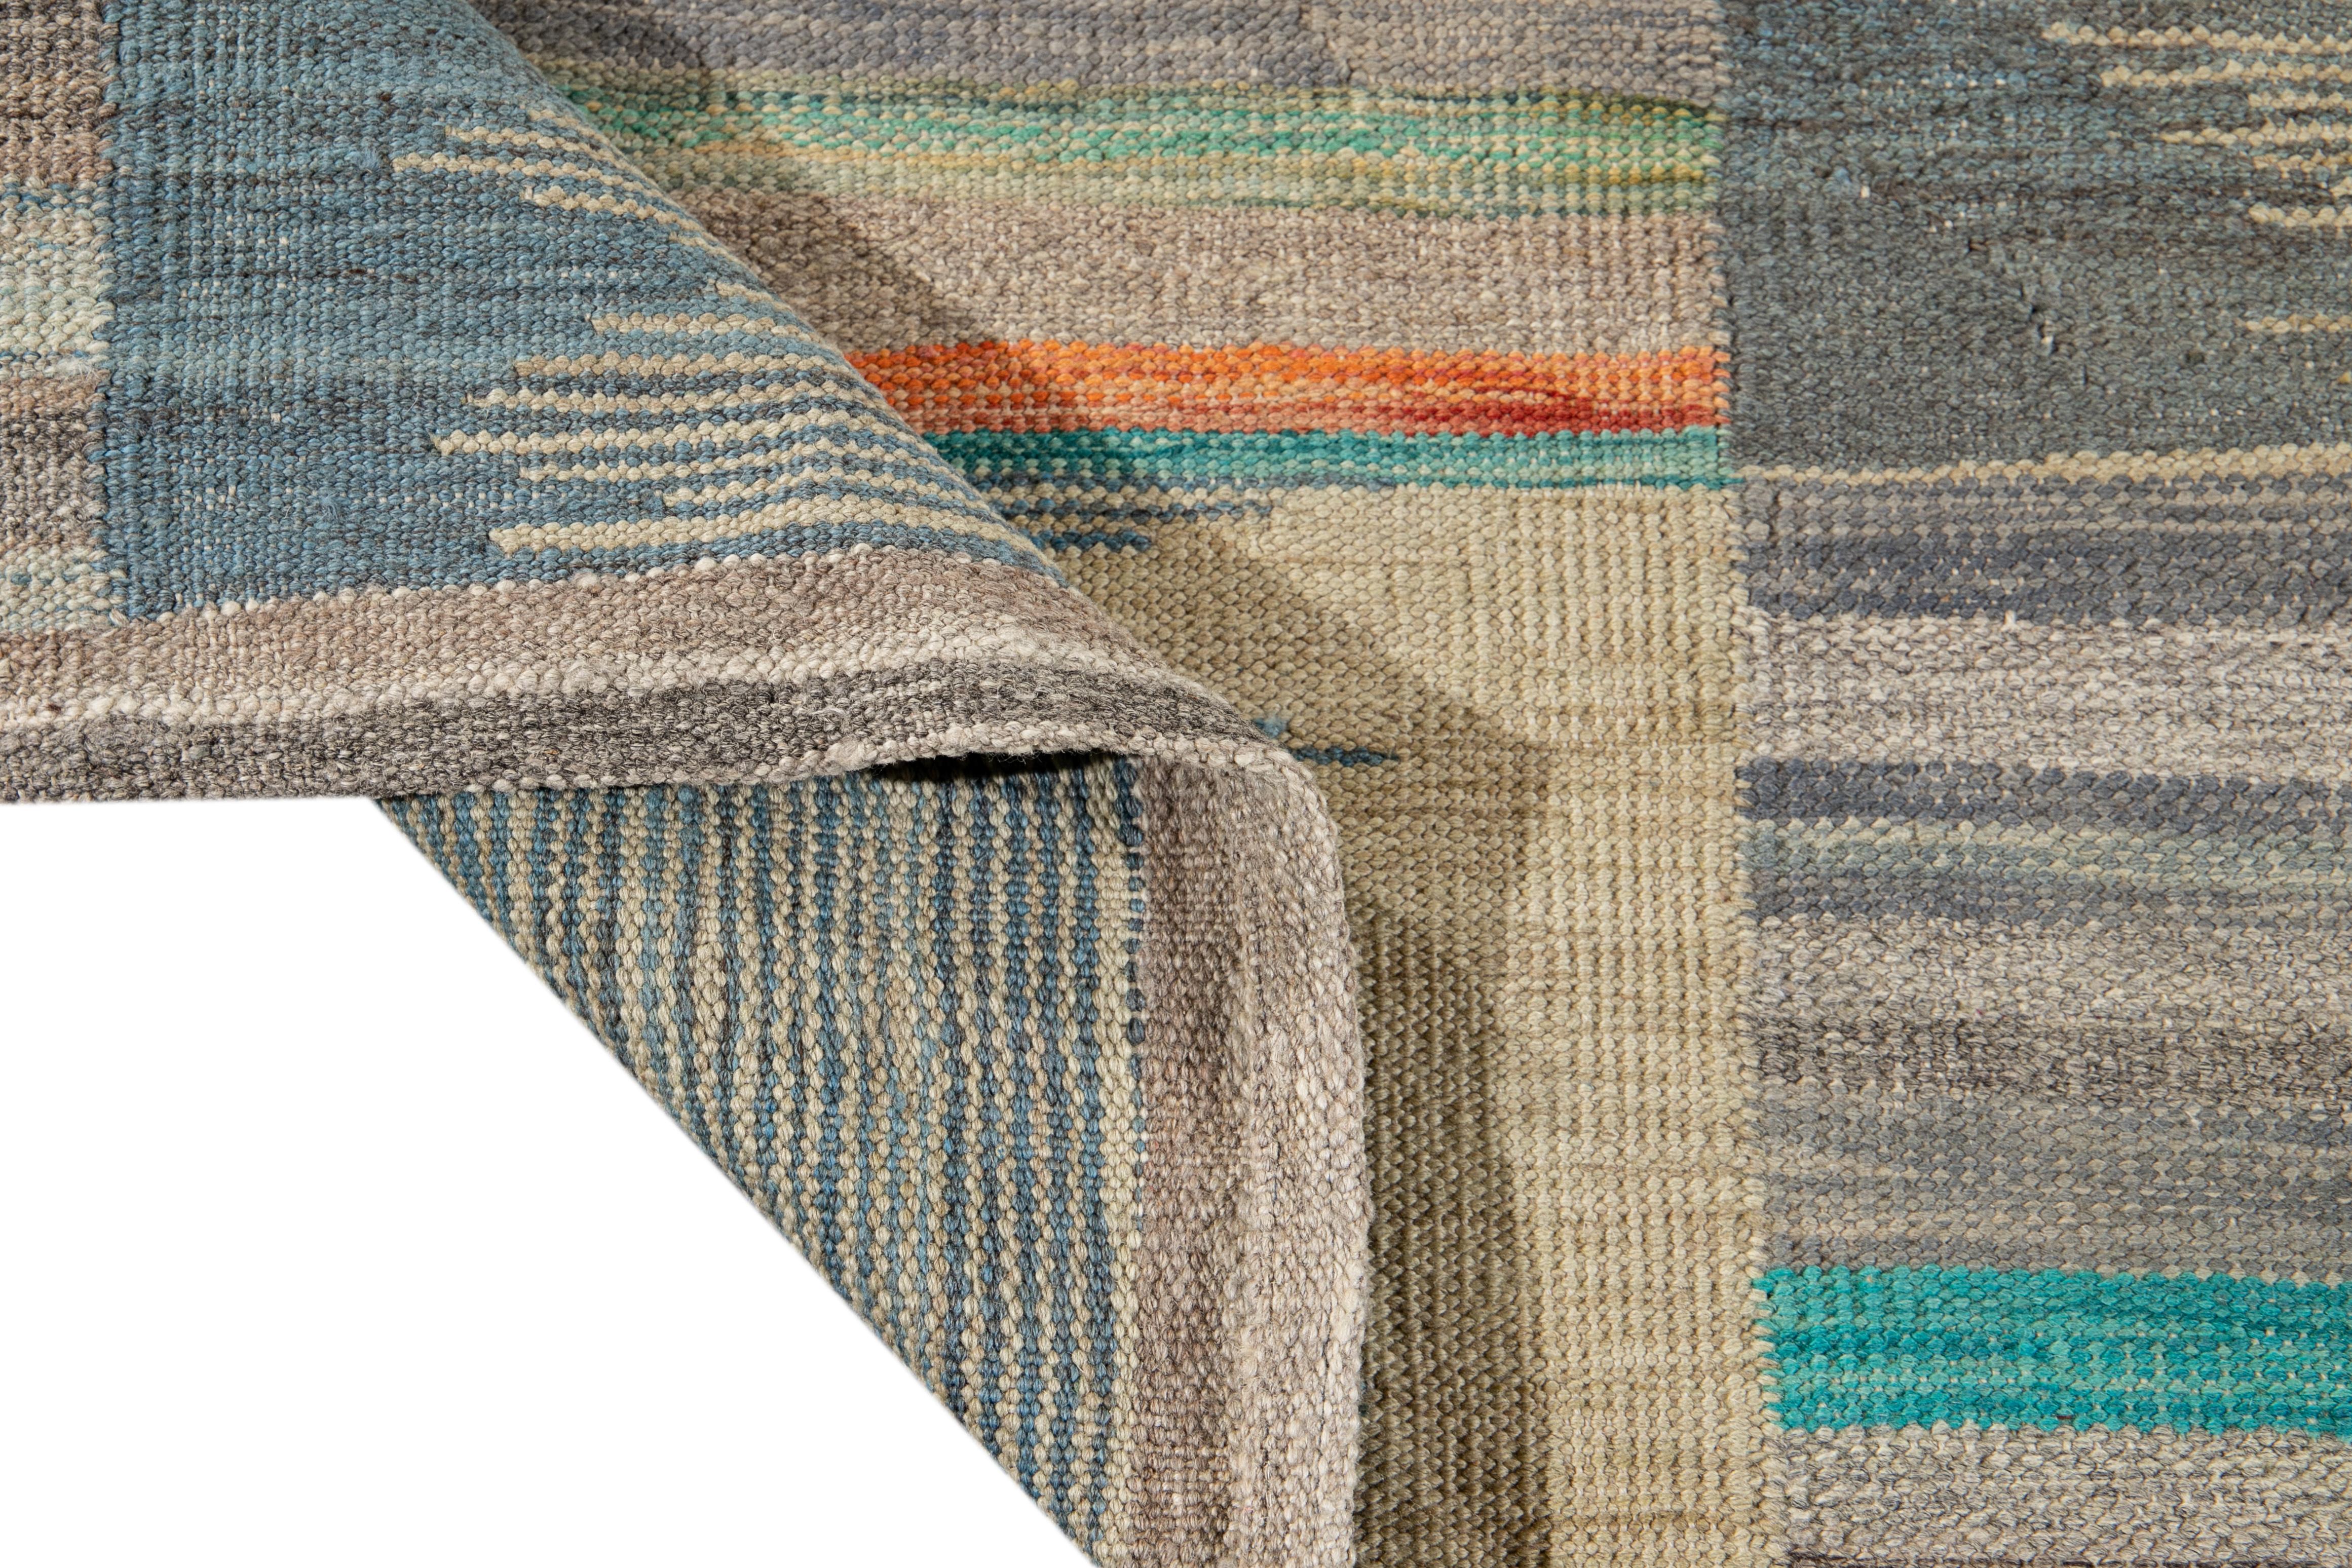 Schöner moderner flachgewebter Kilim-Teppich aus handgefertigter Wolle. Dieser Kelim-Teppich hat ein graues Feld und mehrfarbige Akzente in einem herrlichen geometrischen Muster.

Dieser Teppich misst: 8'9